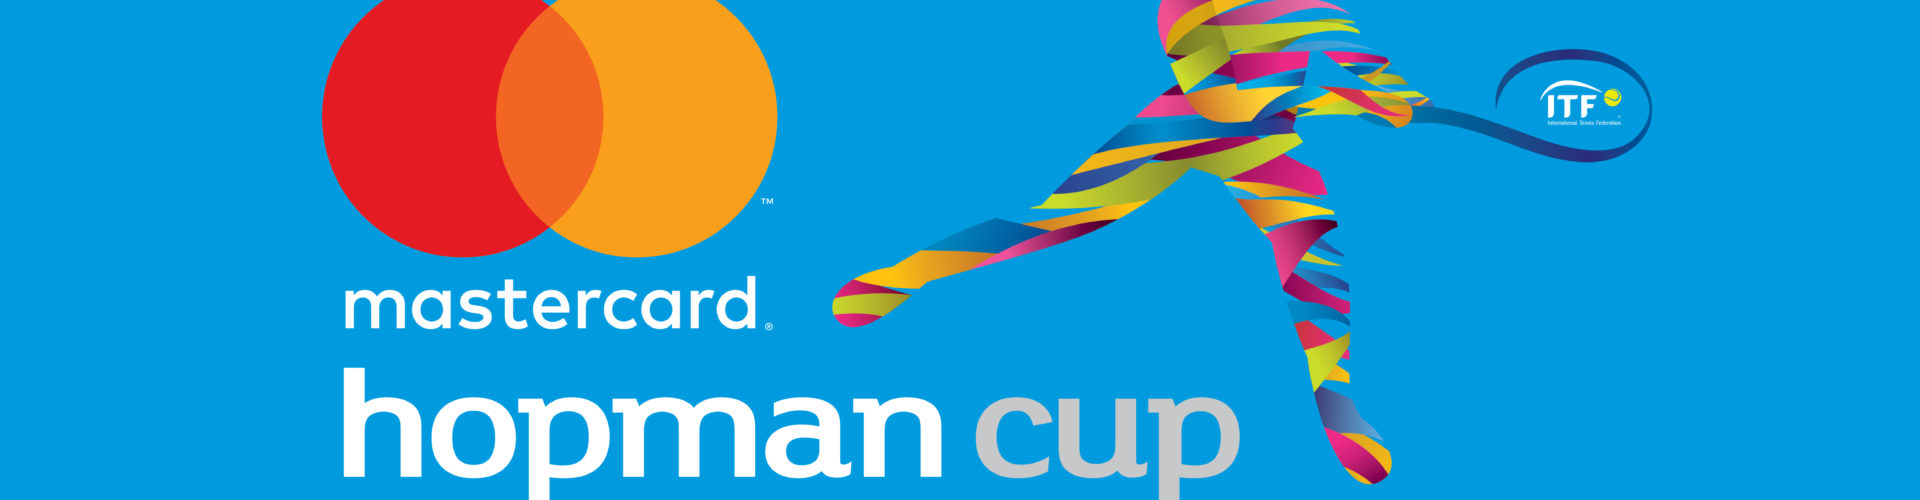 ITF возобновит проведение Кубка Хопмана в 2023 году